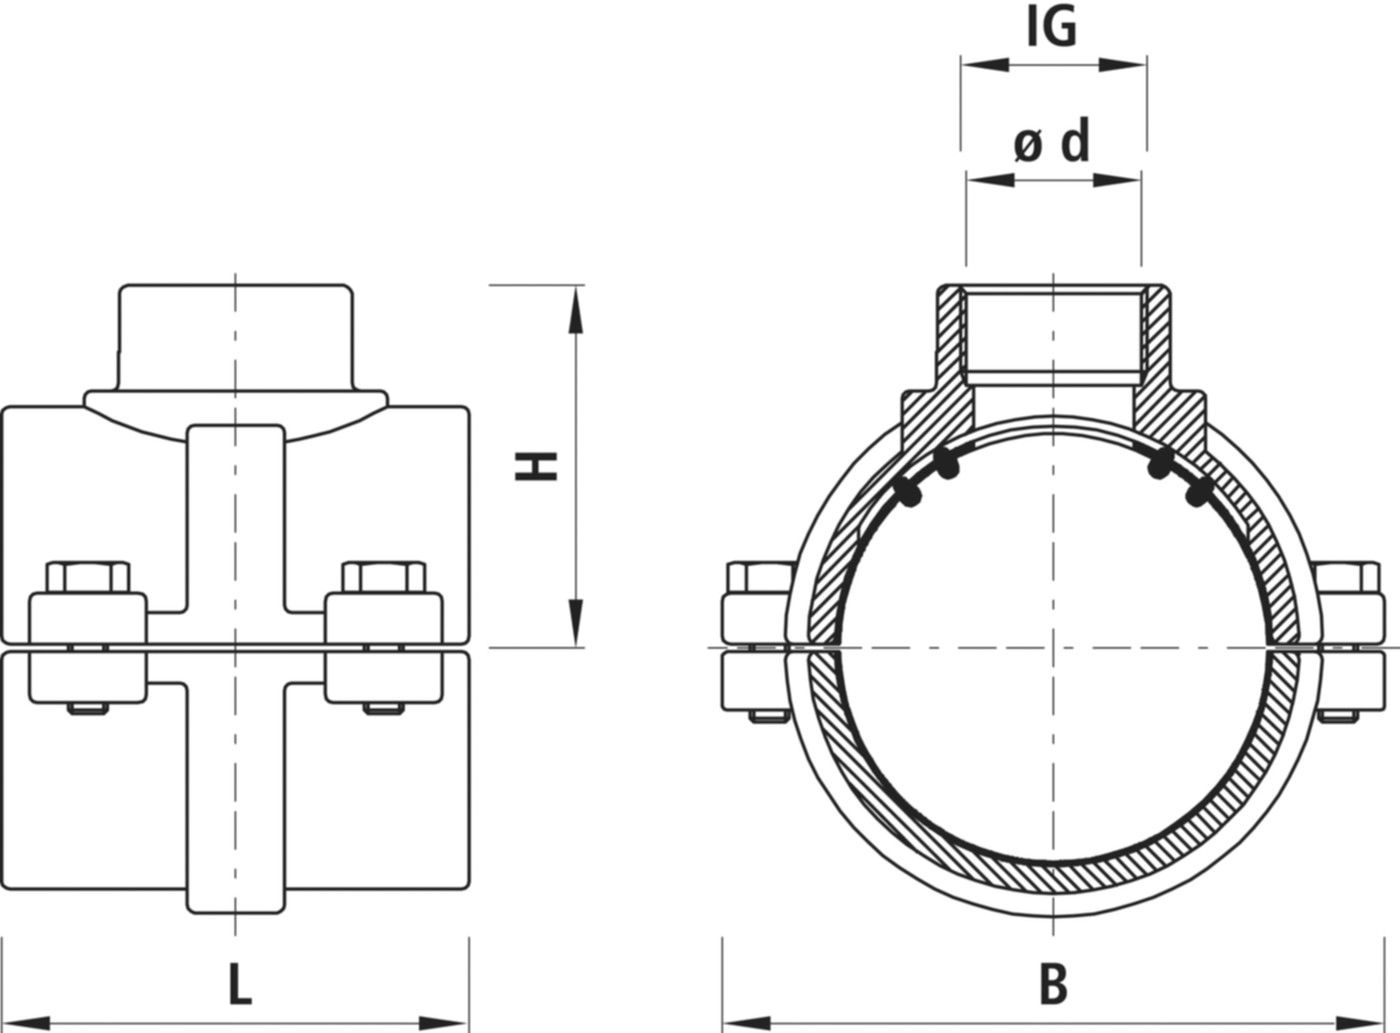 Haku-Anbohrschelle mit IG für Gas 5255 d 110mm - 2" - Hawle Hausanschluss- und Anbohrarmaturen